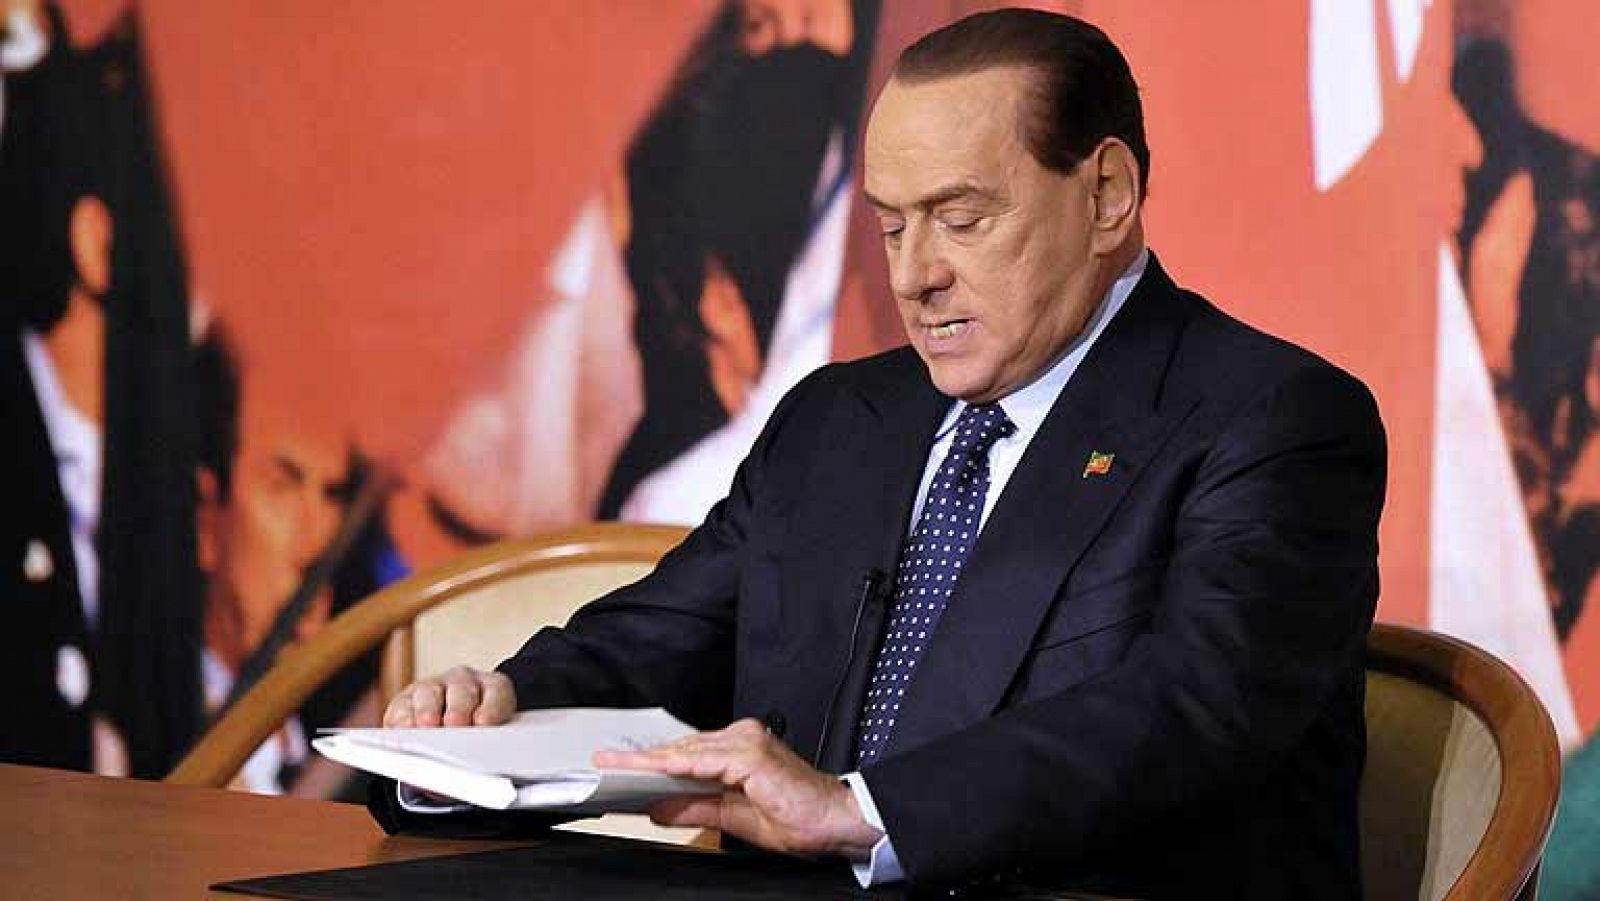  El partido de Berlusconi abandona la coalición gubernamental de Italia en la víspera del voto en el Senado